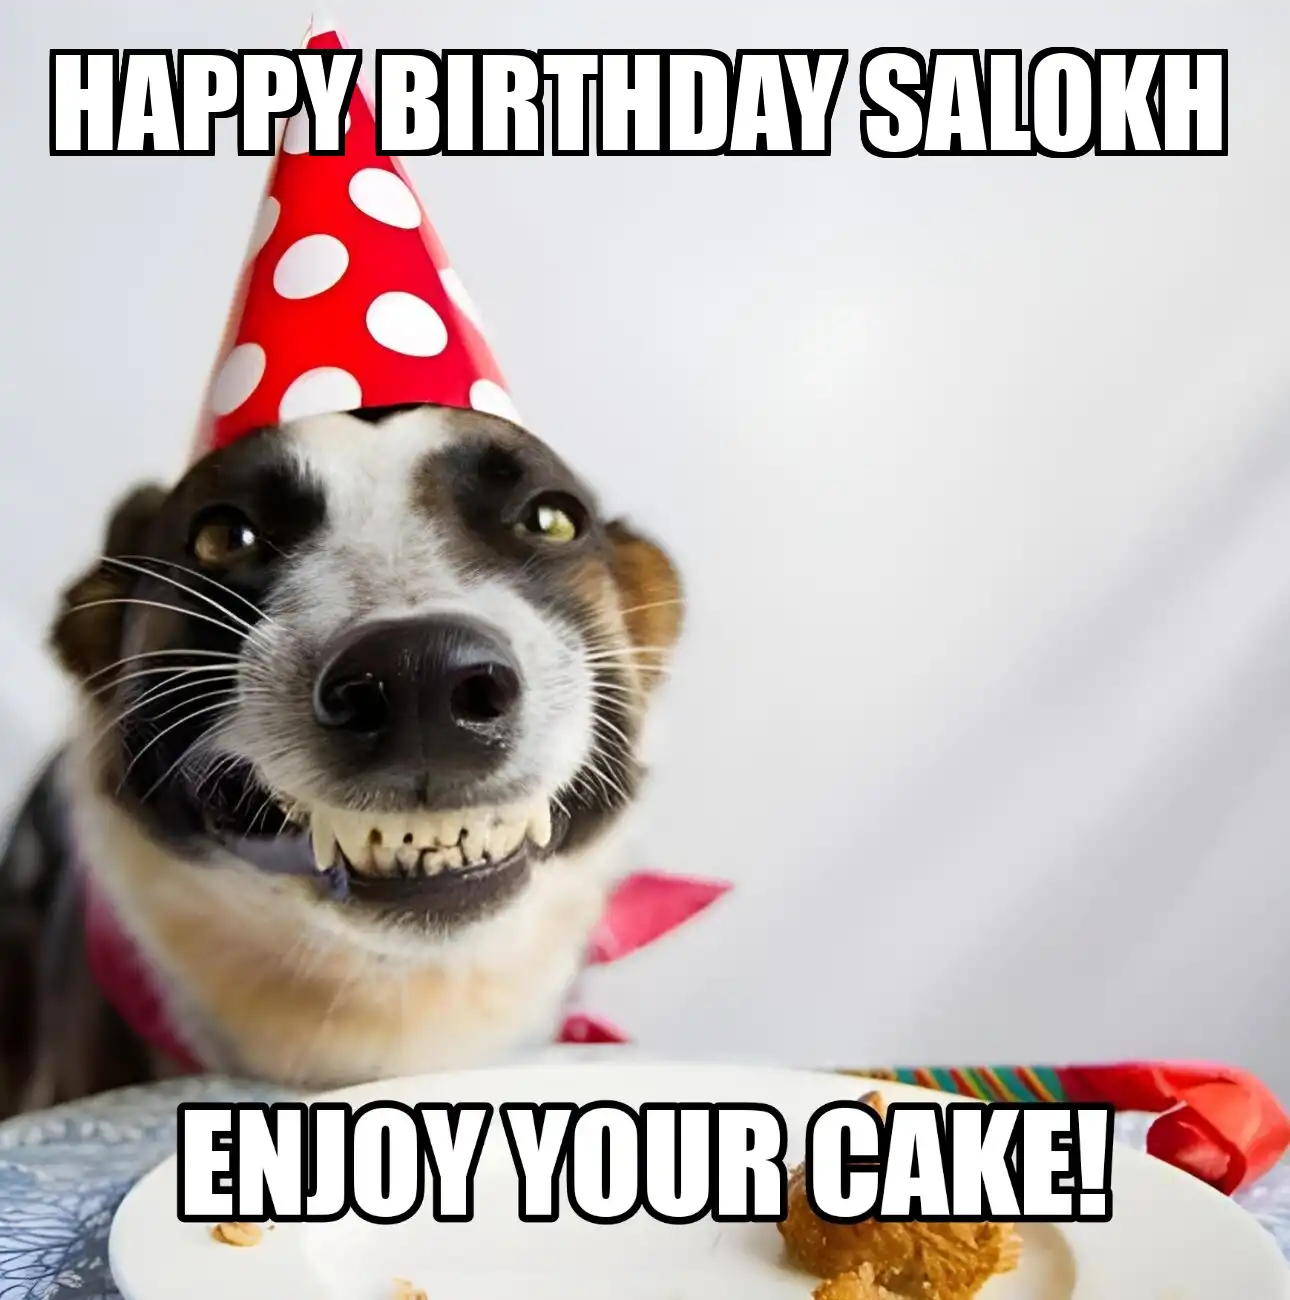 Happy Birthday Salokh Enjoy Your Cake Dog Meme